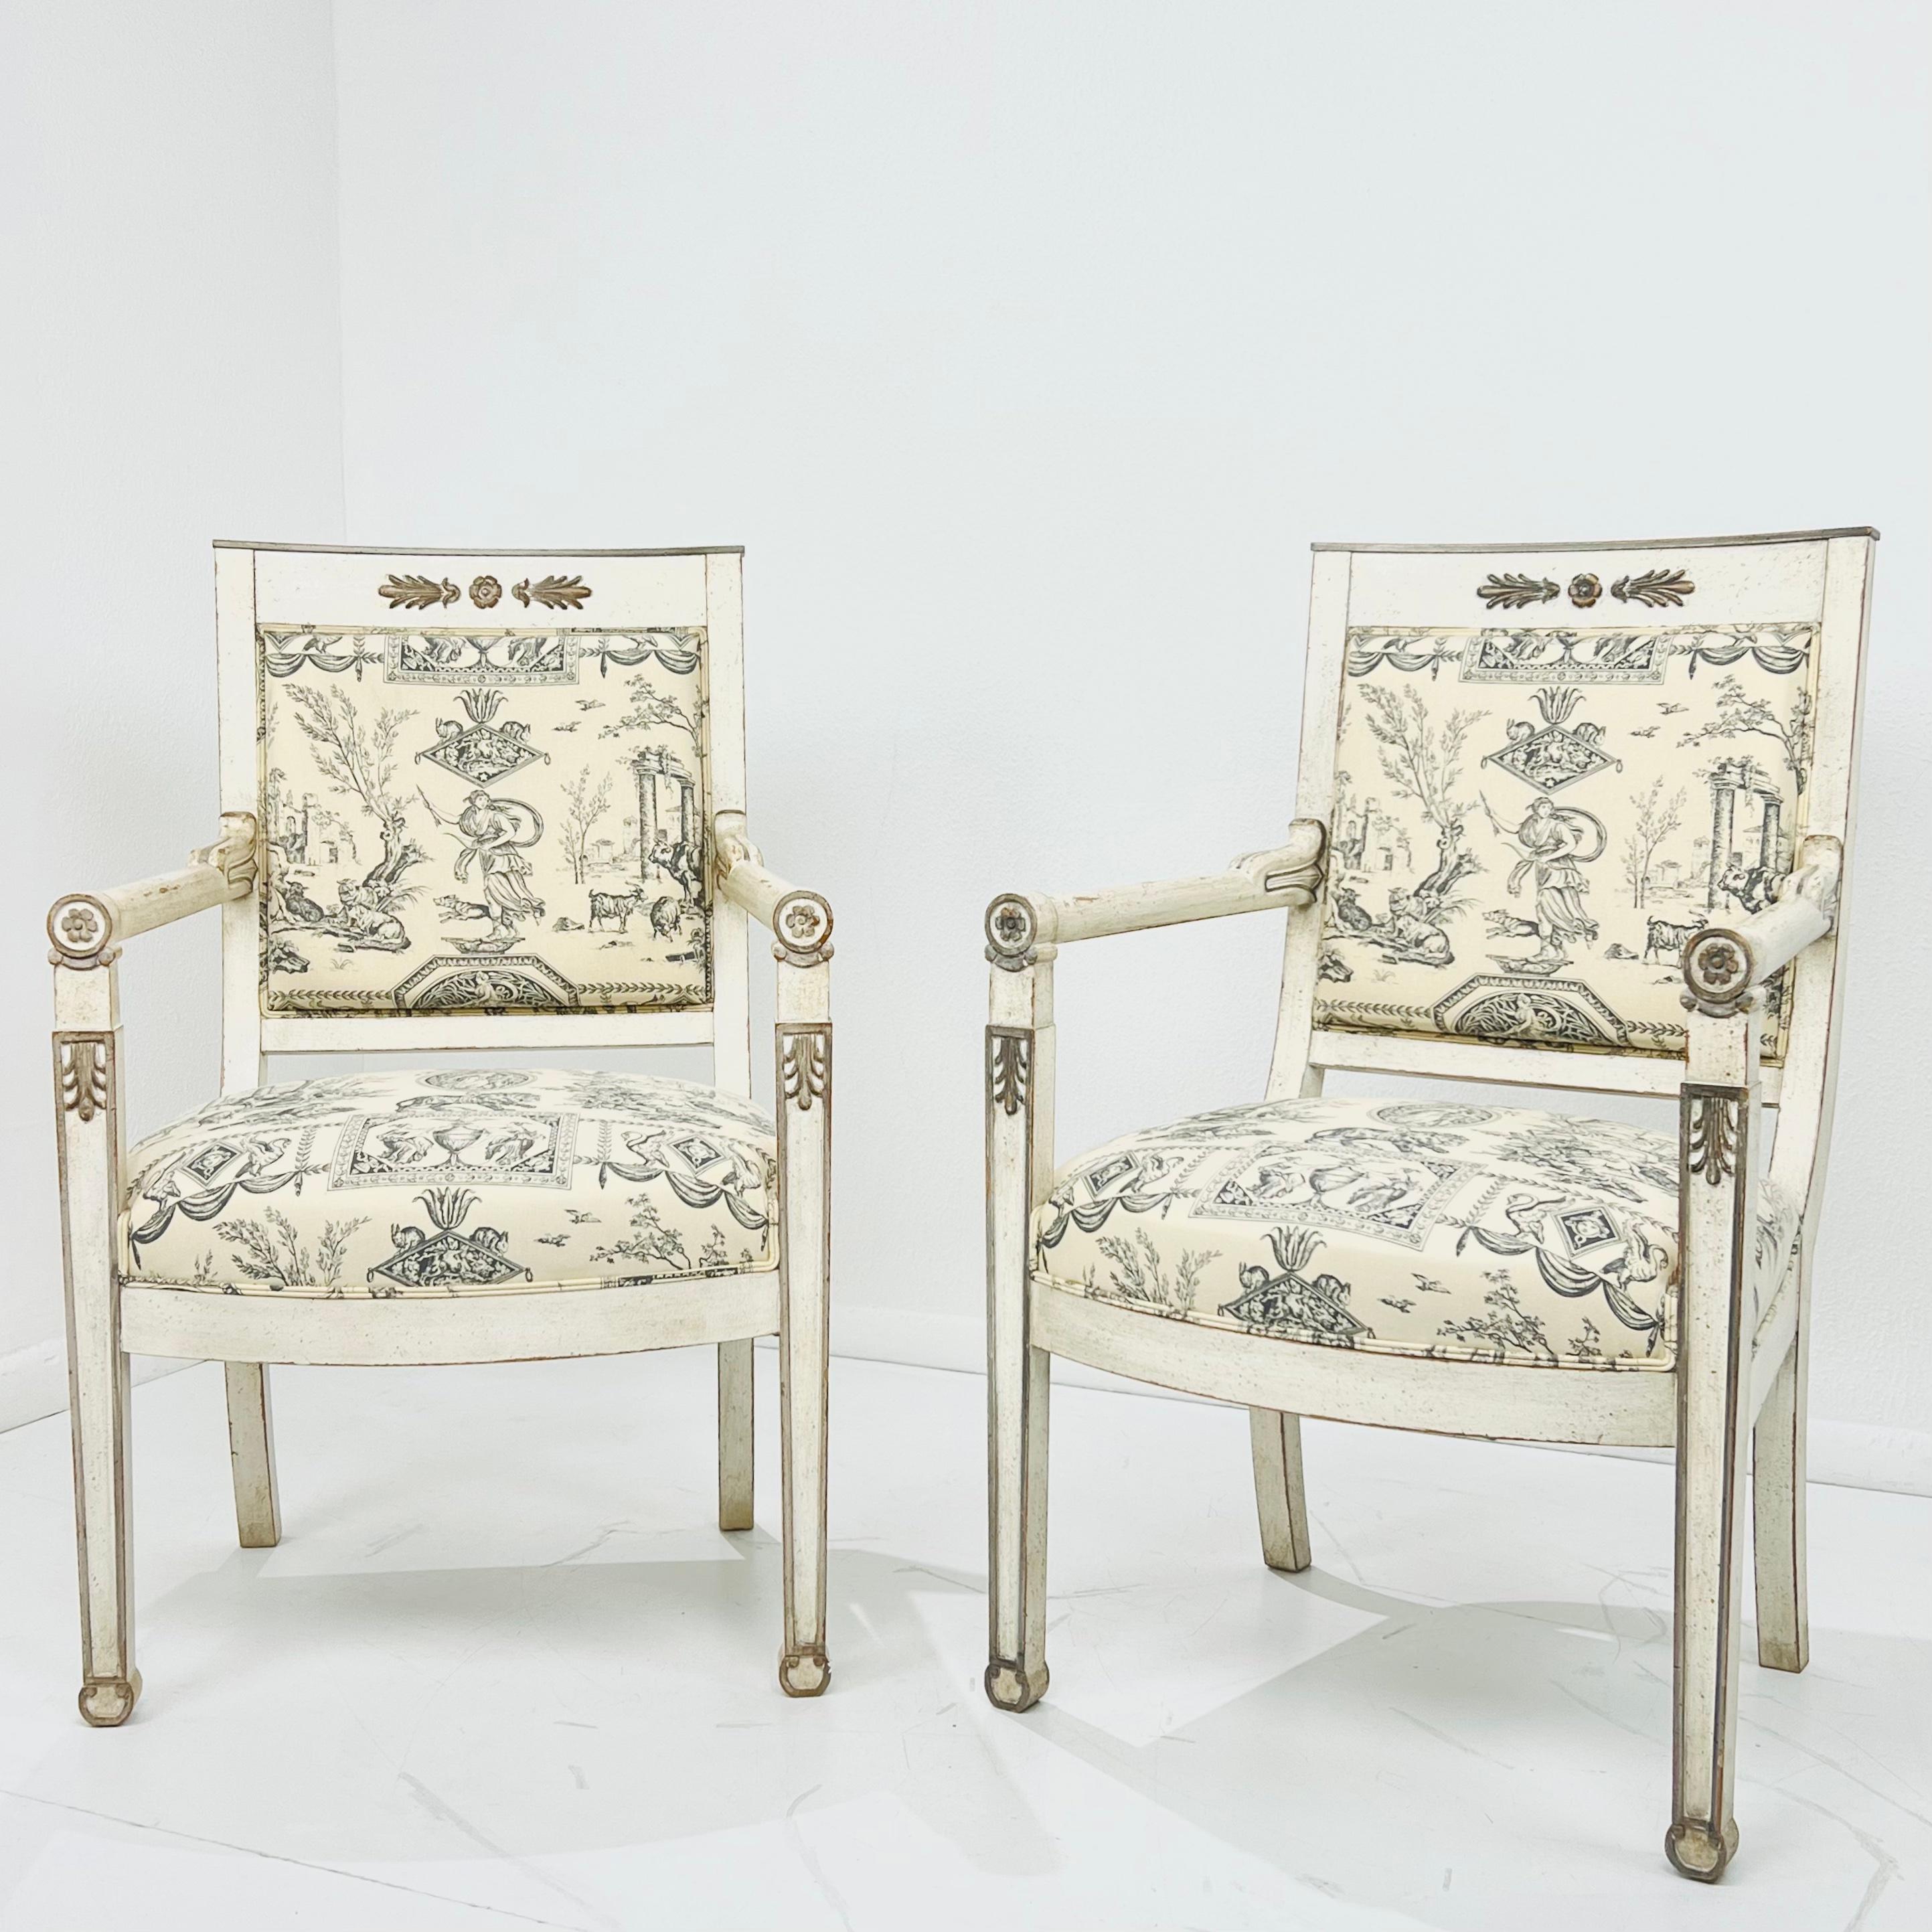 Ein Paar elegante französische Sessel im Directoire-Stil aus massivem Kirschbaumholz. Die in der Vorderansicht geraden Linien verleihen den Sesseln einen unverwechselbaren, fast modernen Charakter. Die leicht verjüngten Vorderbeine dienen als